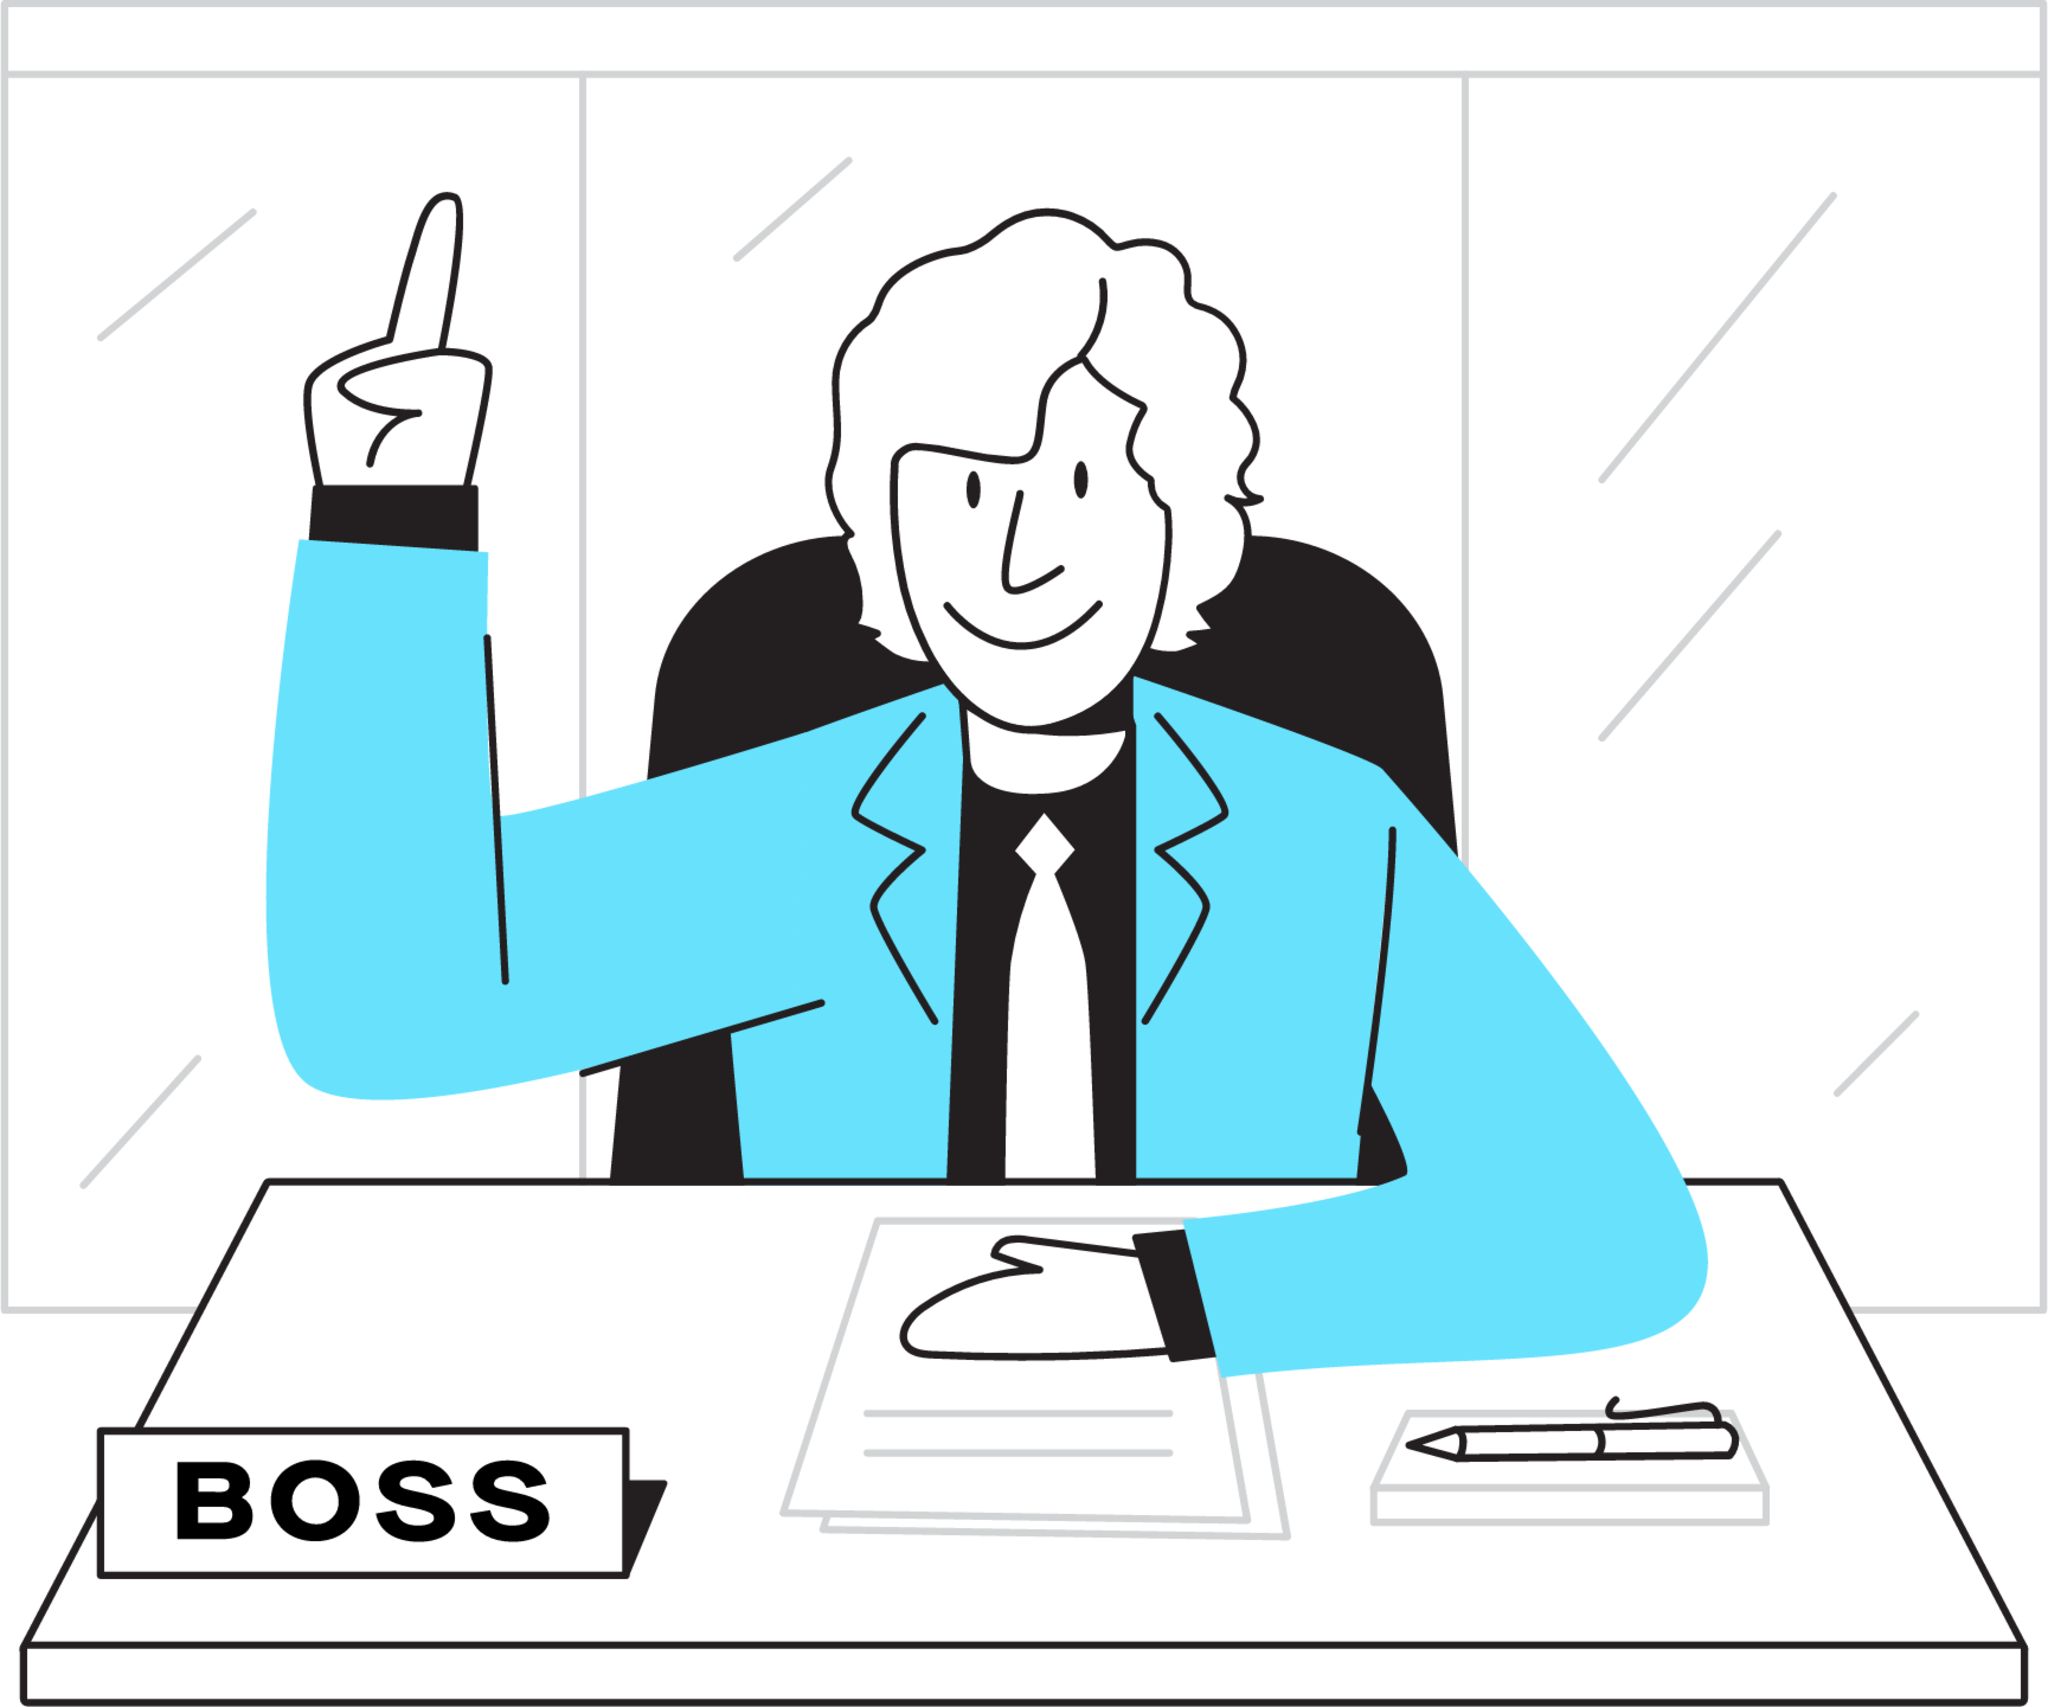 Boss illustration